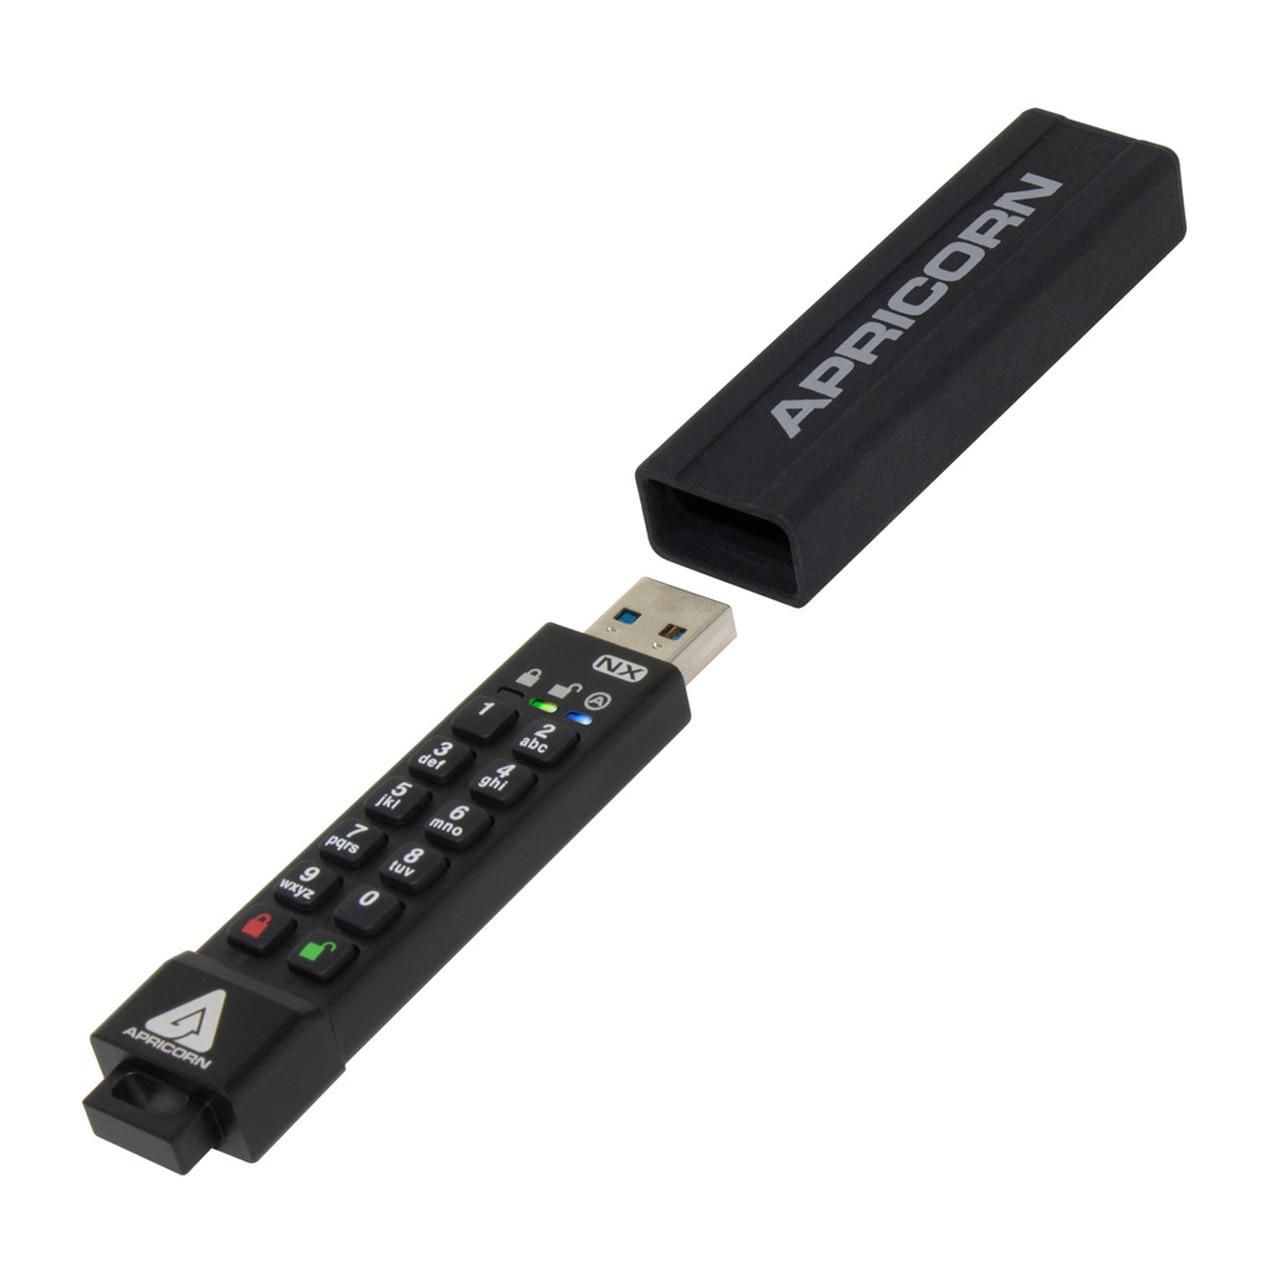 Apricorn ASK3-NX-8GB W127025991 ASK3 USB flash drive 8 GB USB 